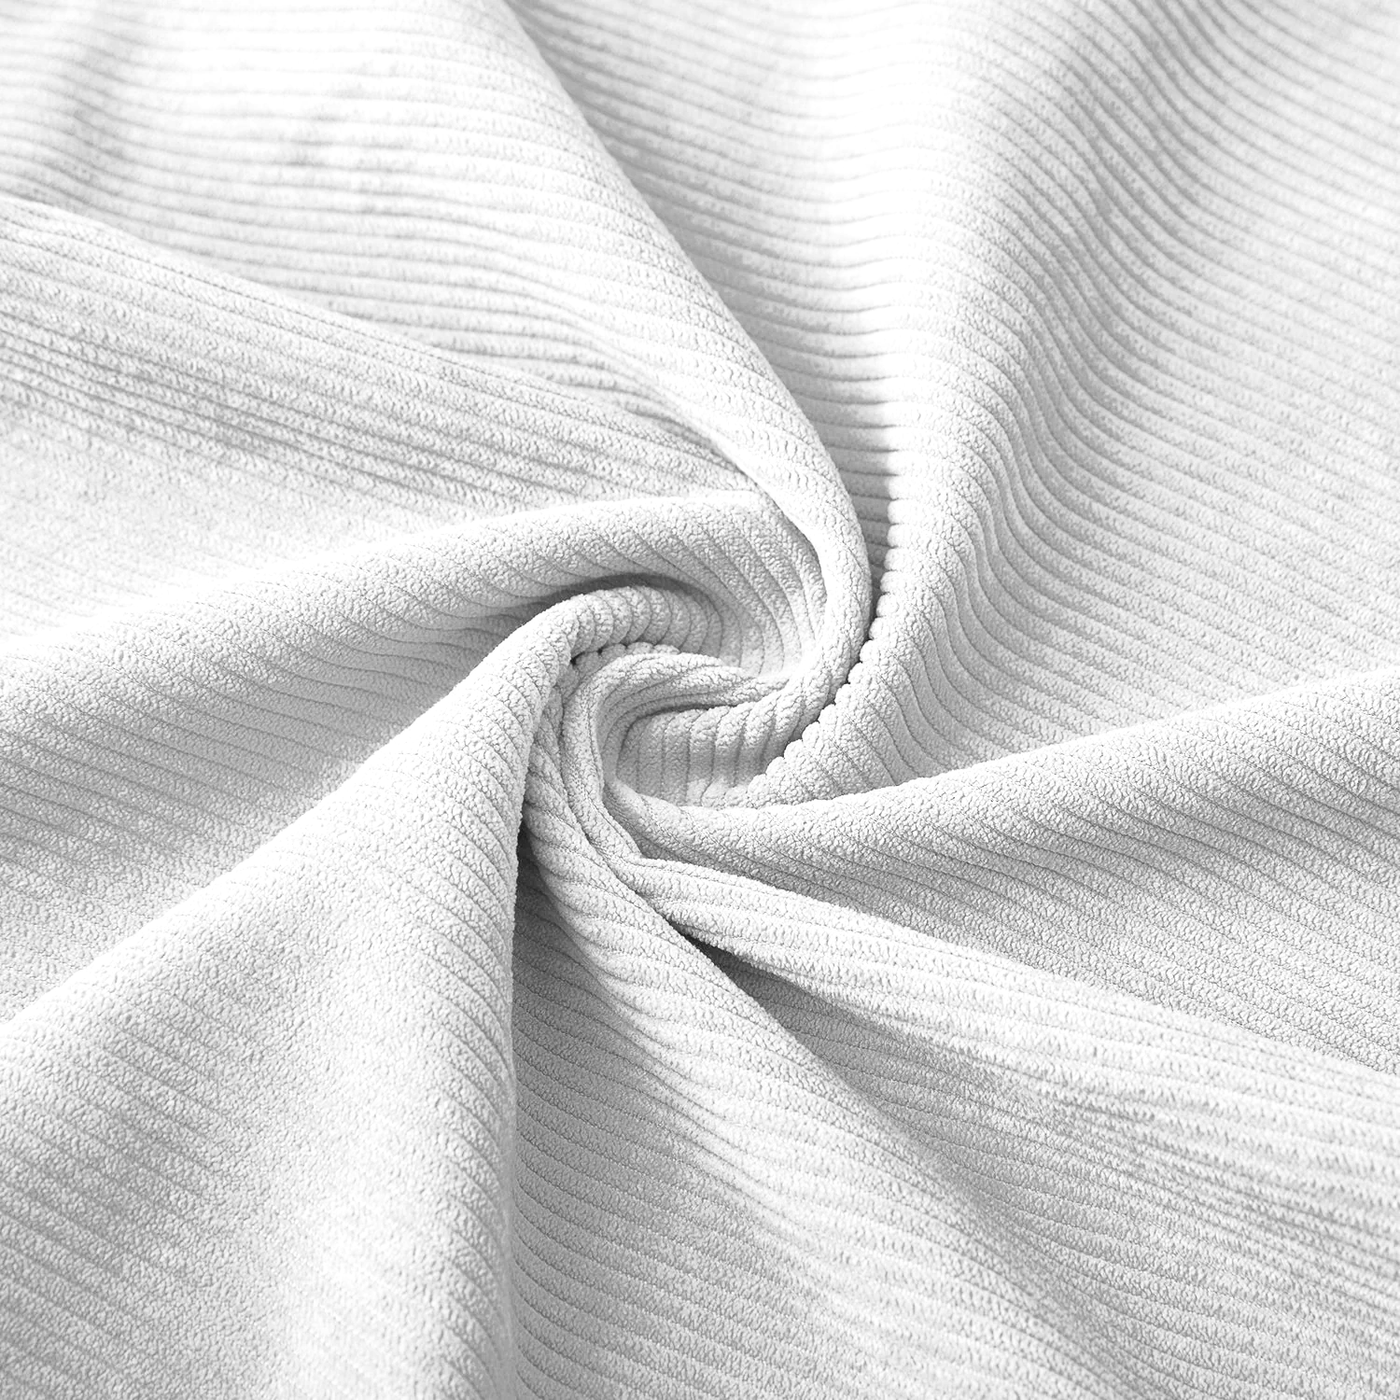 Velvet Corduroy Cushion Covers White